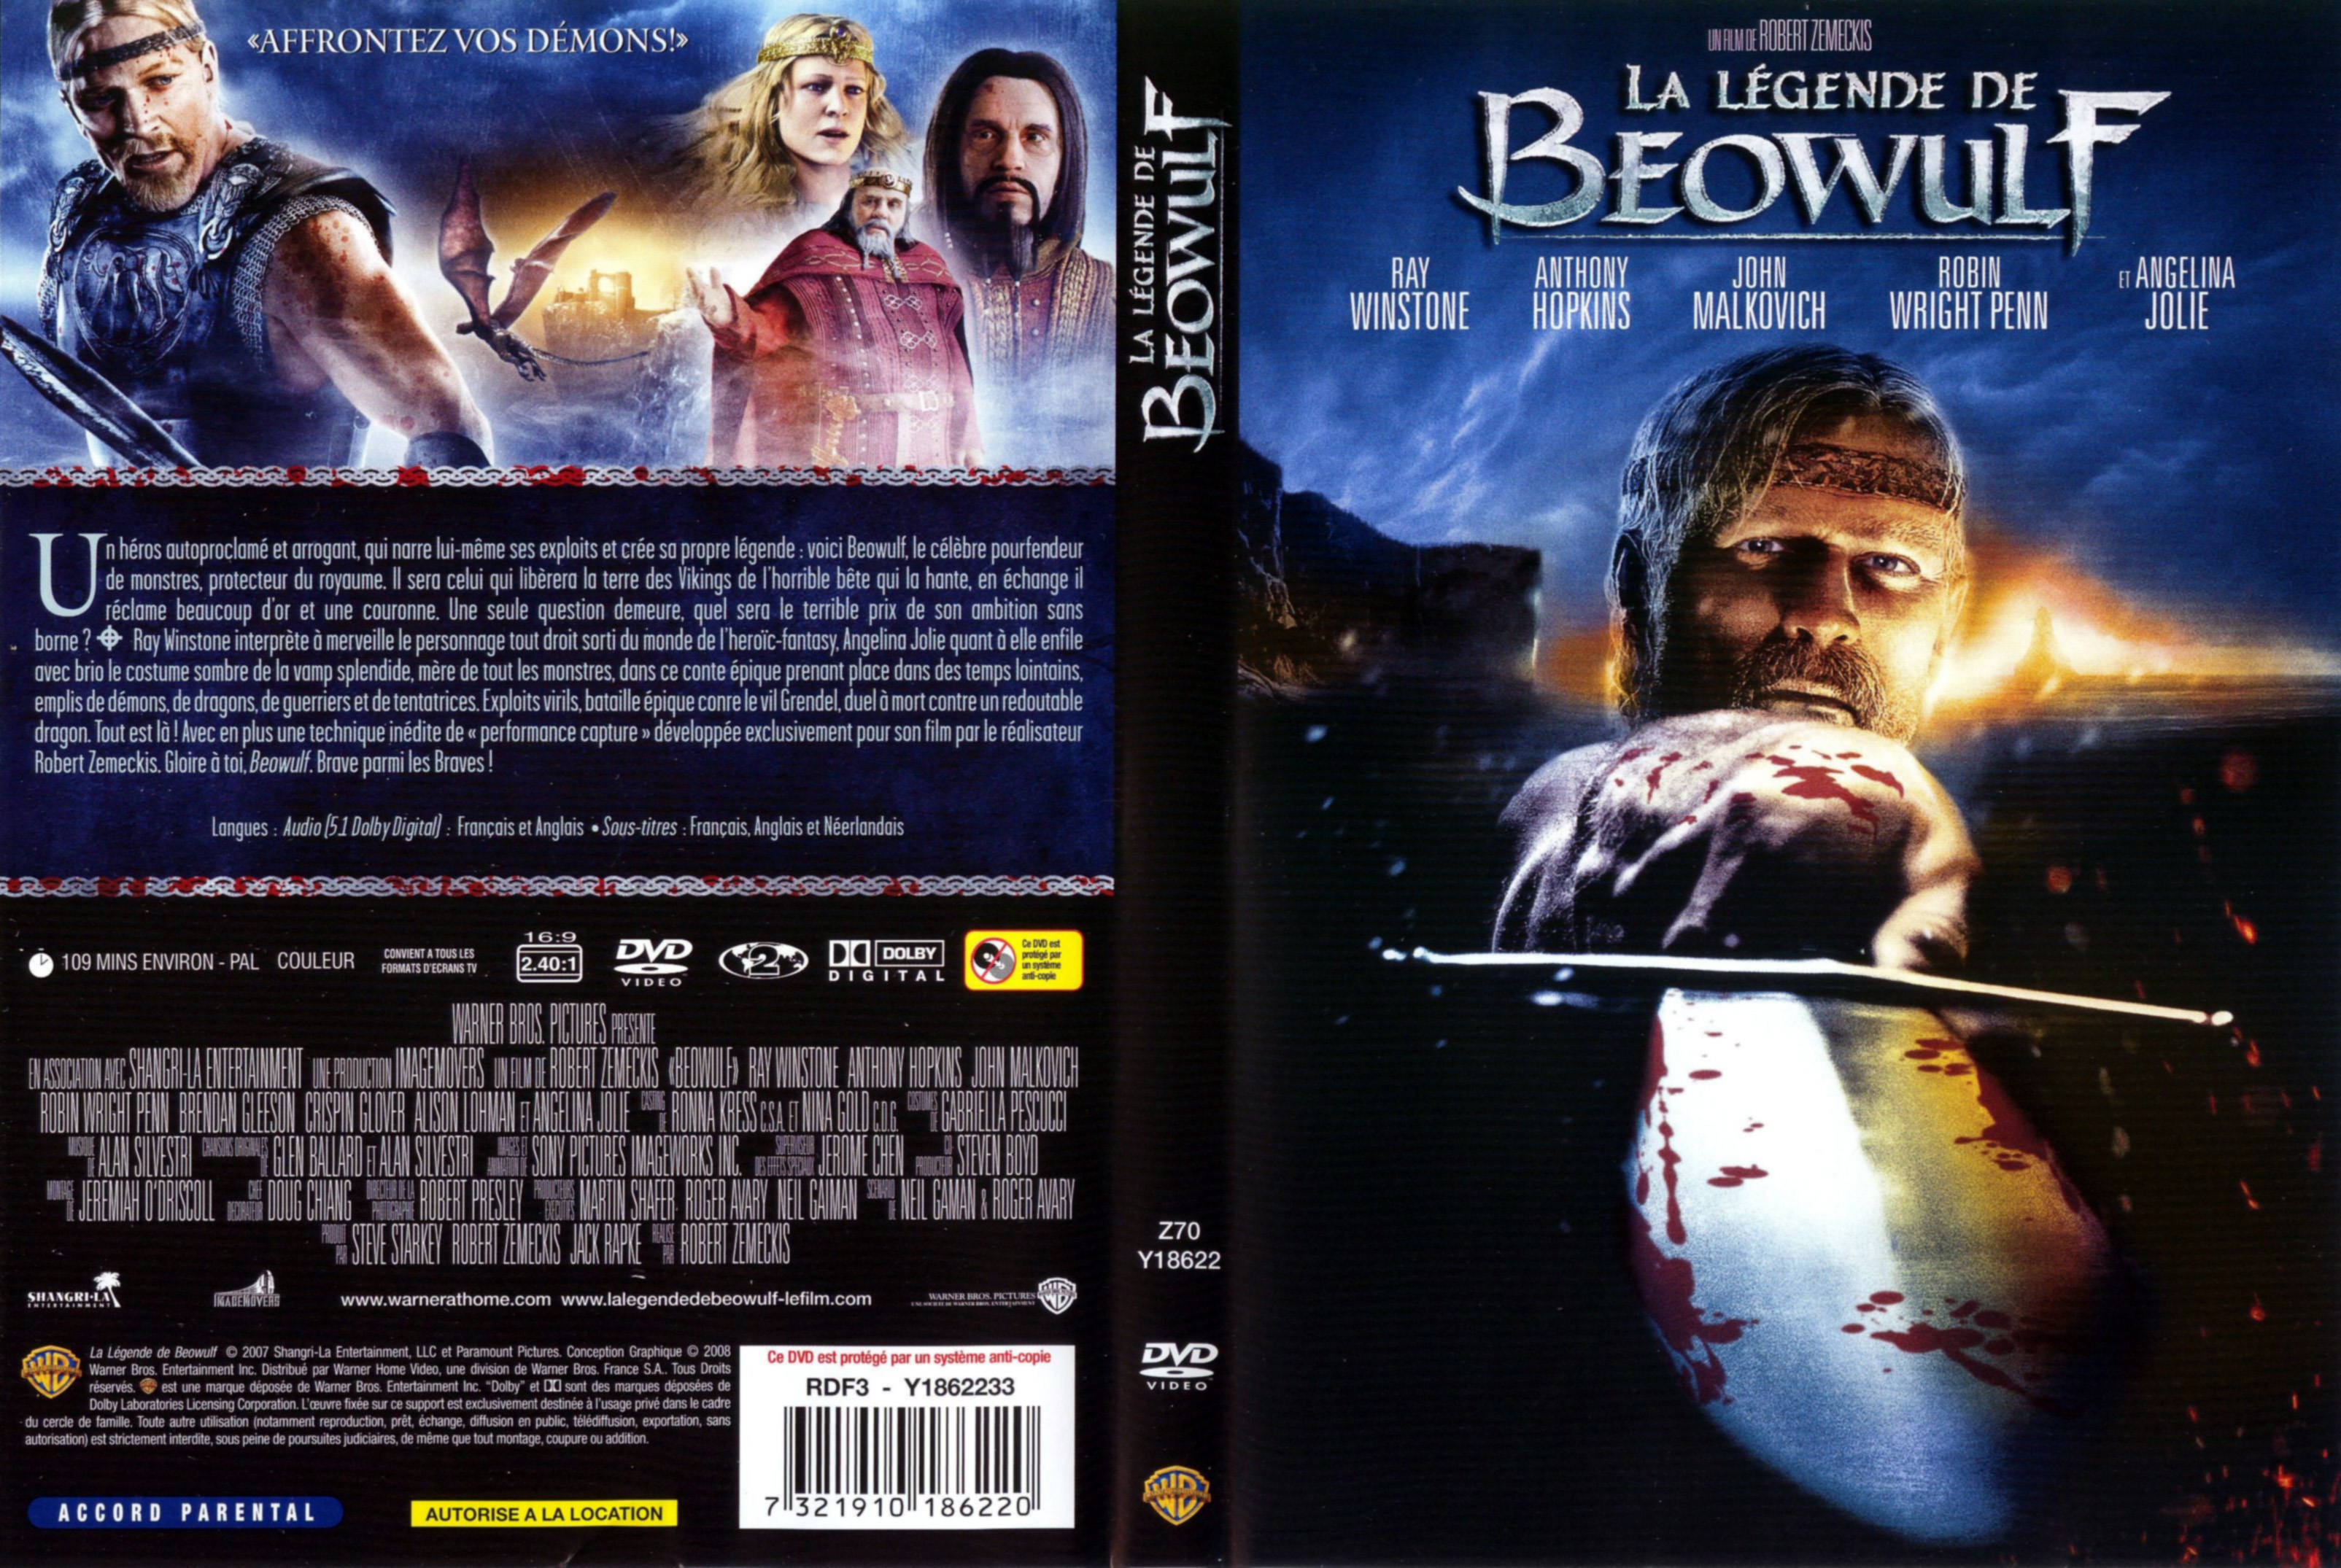 Jaquette DVD La lgende de Beowulf v2